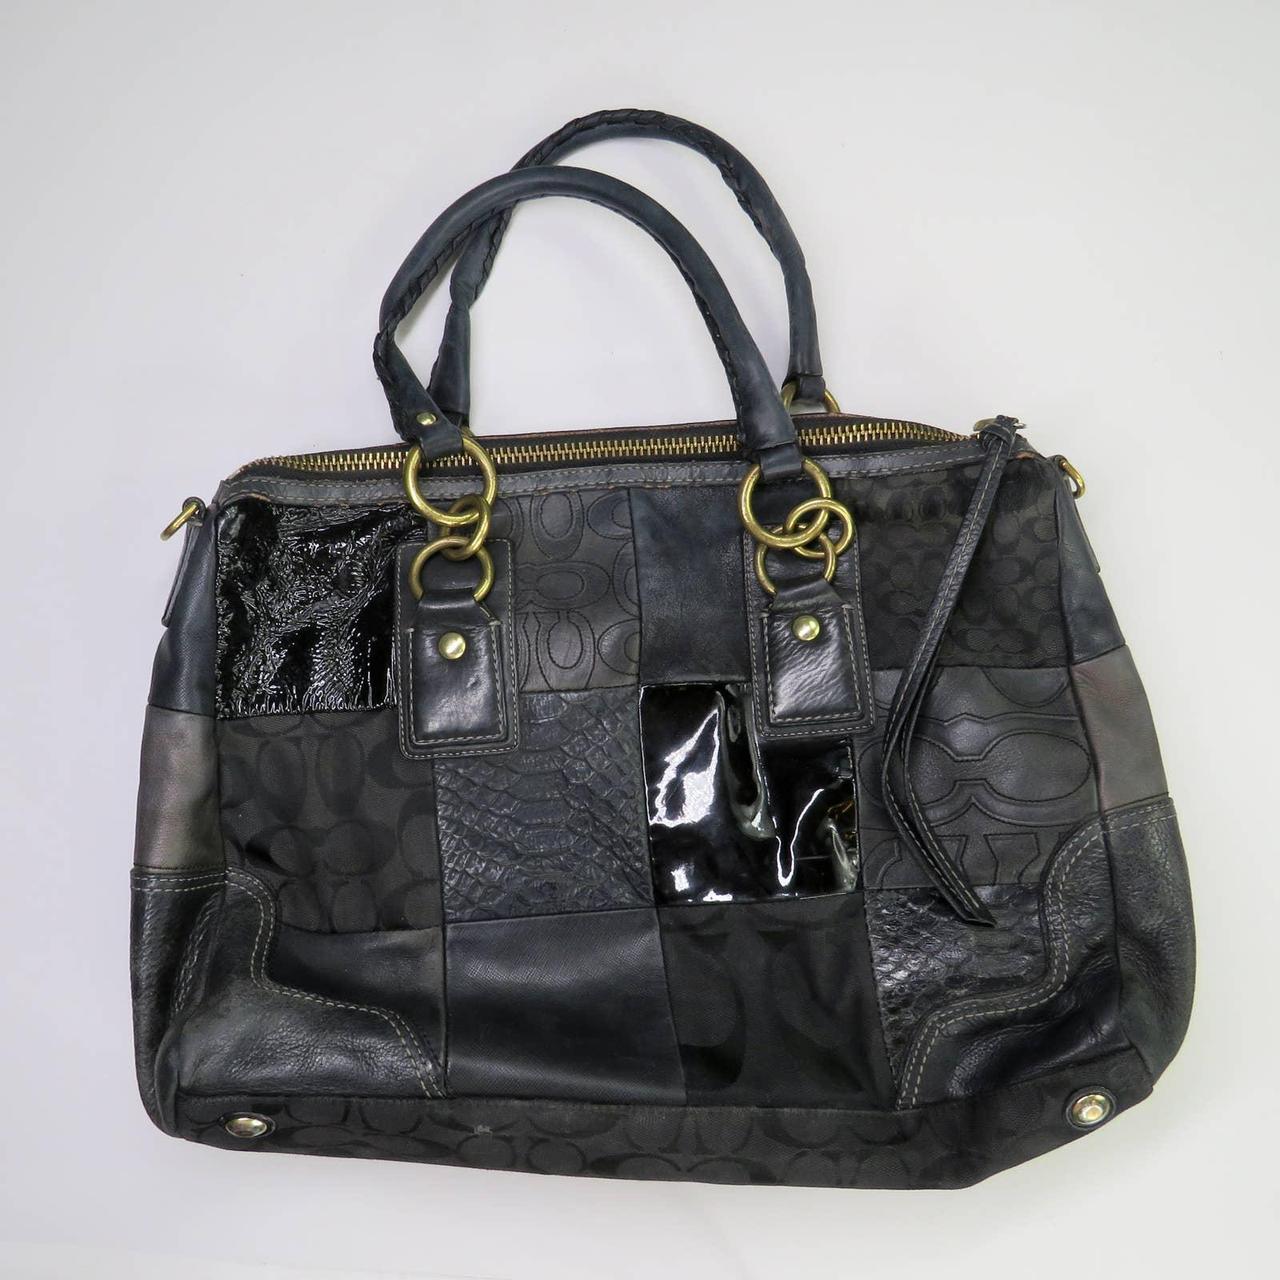 Circa 1990s Early 2000s Vintage Coach Handbag. Black... - Depop